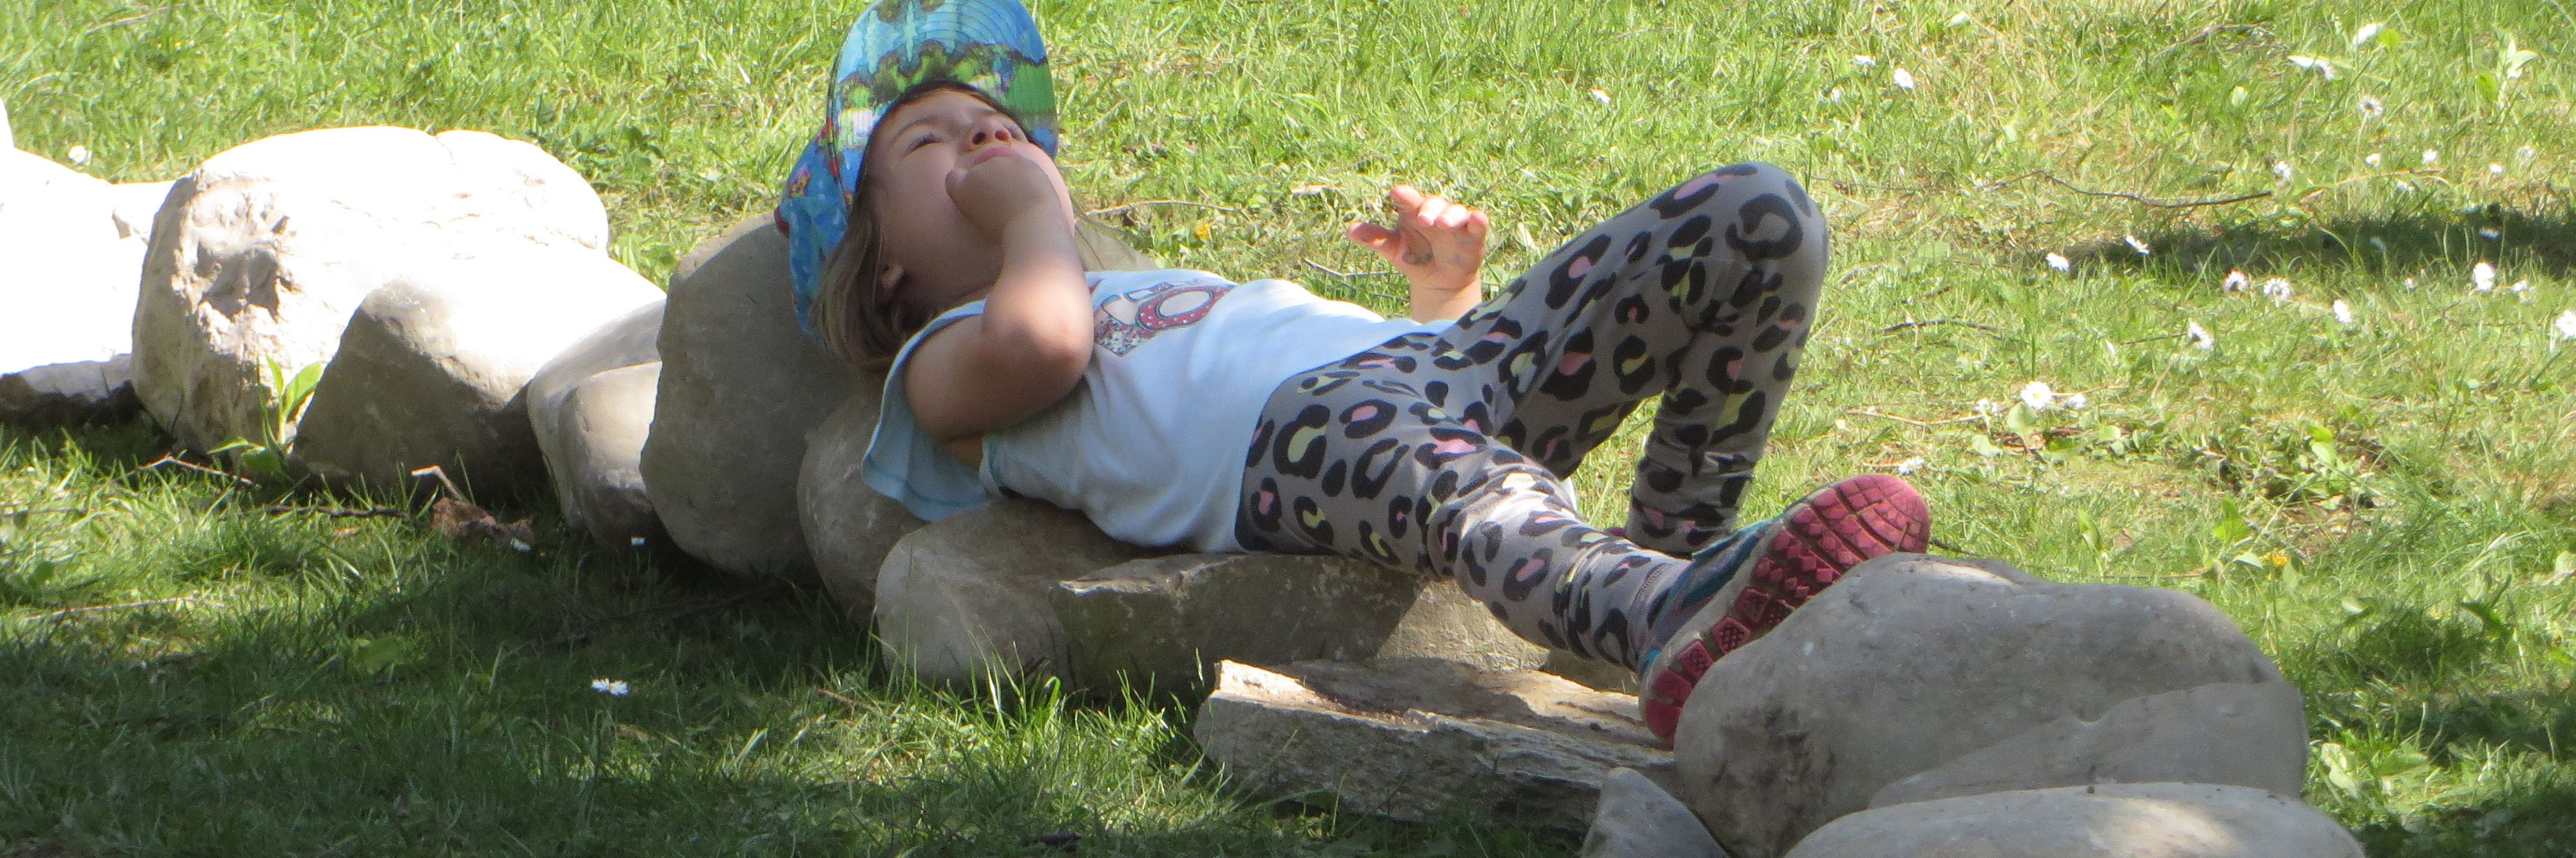 Denkpause: Kind ruht sich auf Steinen aus.